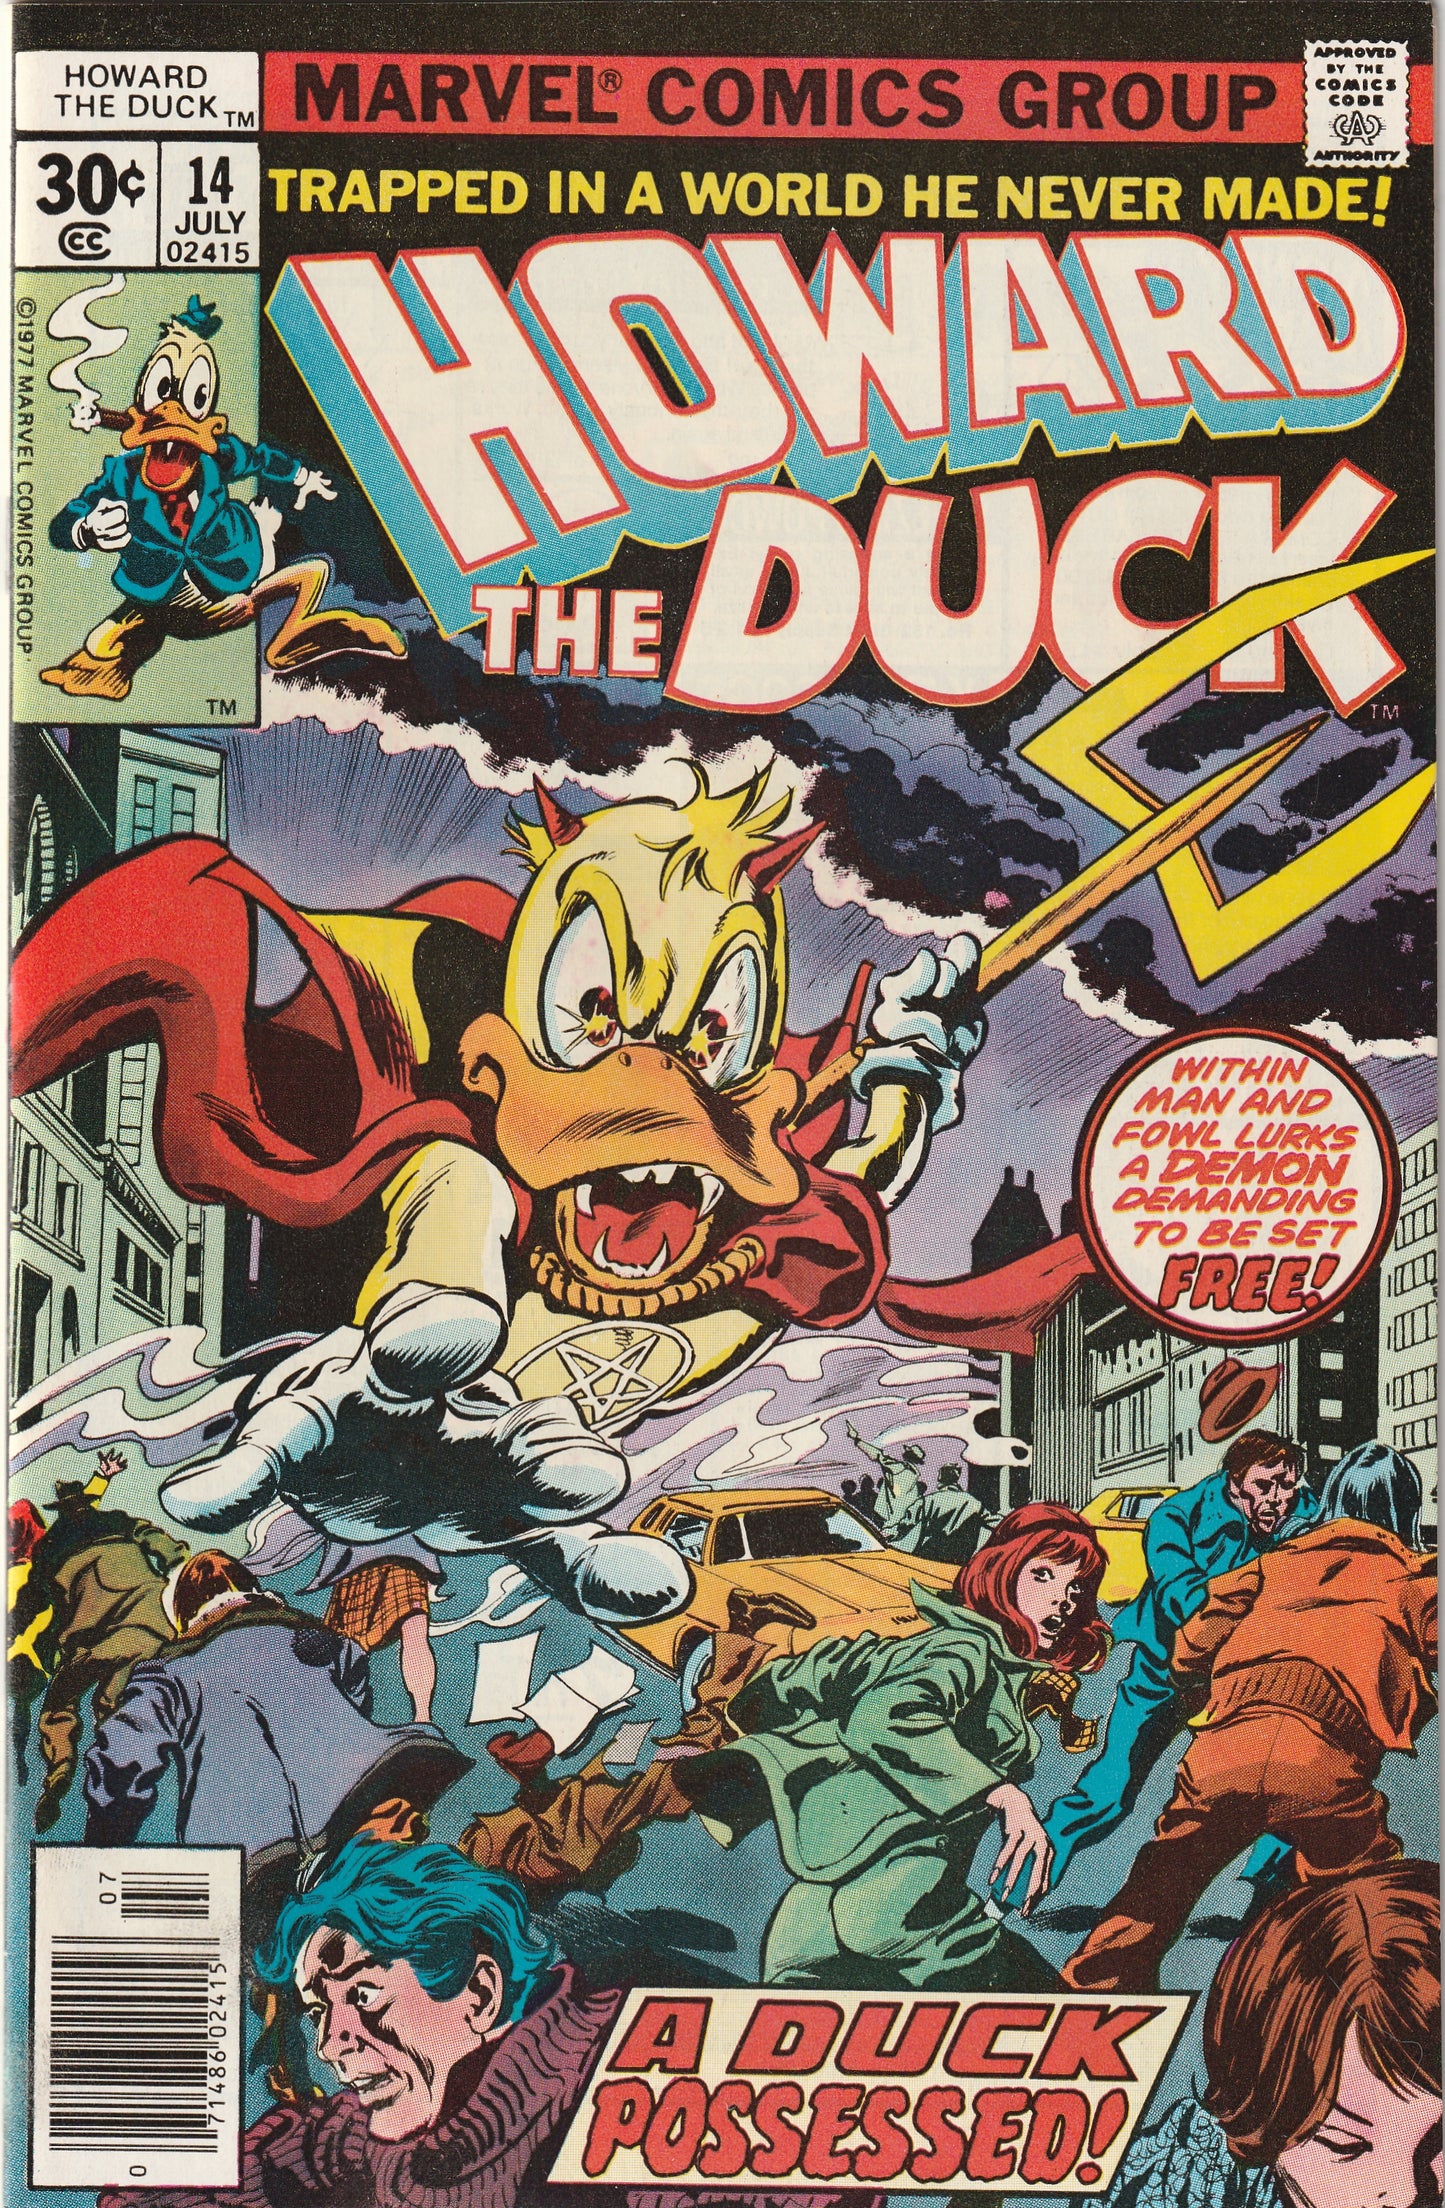 Howard the Duck #14 (1977) - Howard as Son of Satan